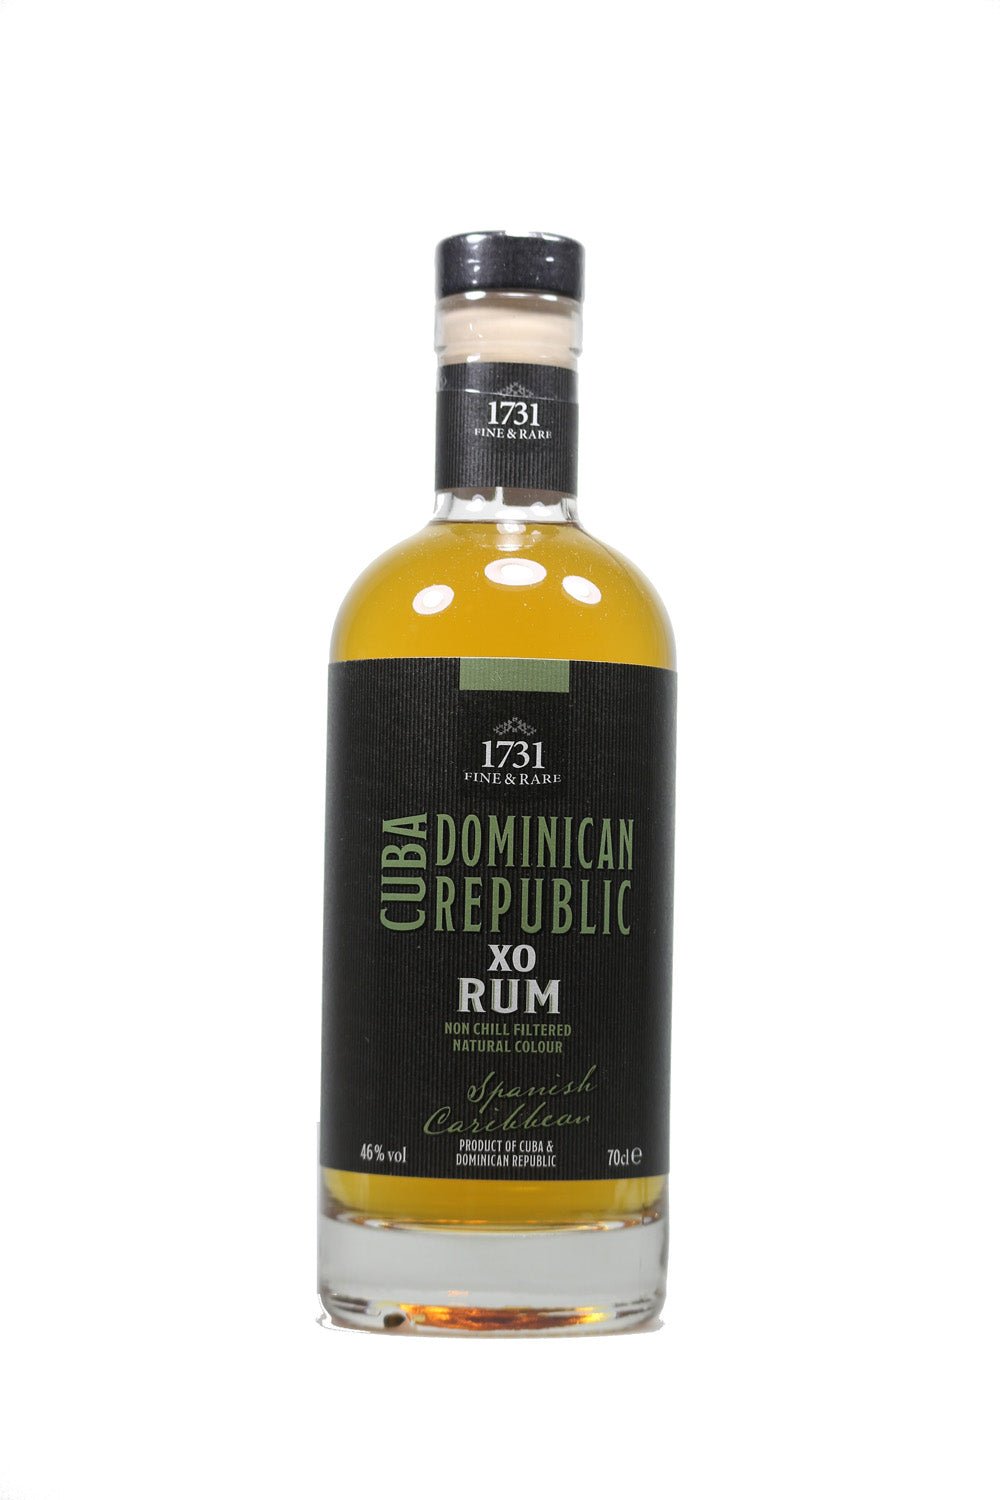 1731 Fine & Rare Spanish Caribbean Rum 46% 700ml - Maltimore